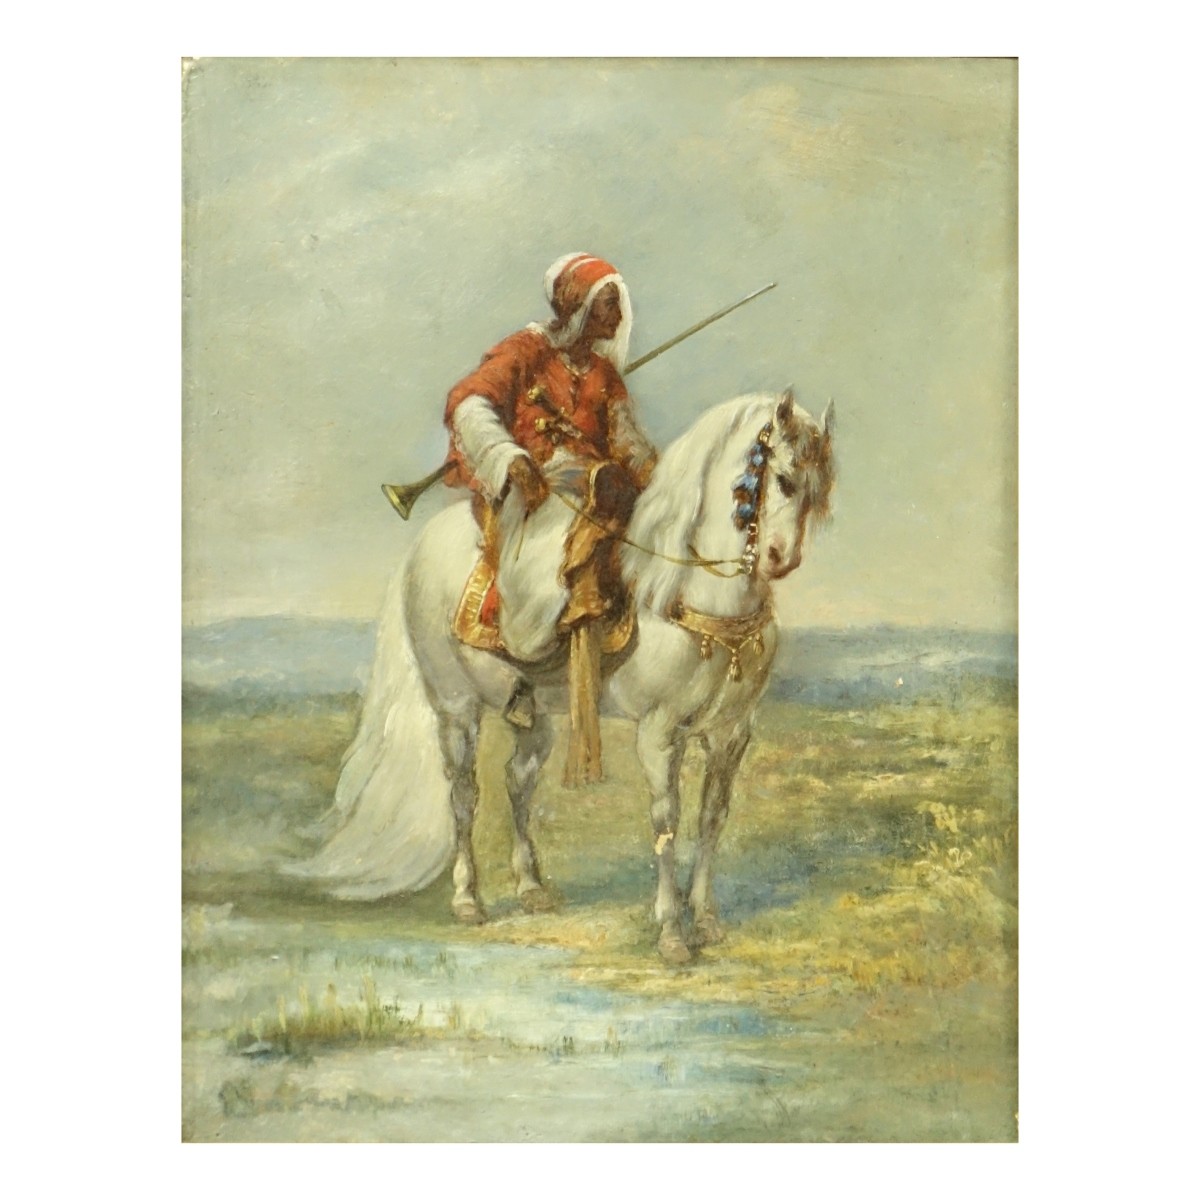 Orientalist Oil on Board, Lone Arab on Horseback